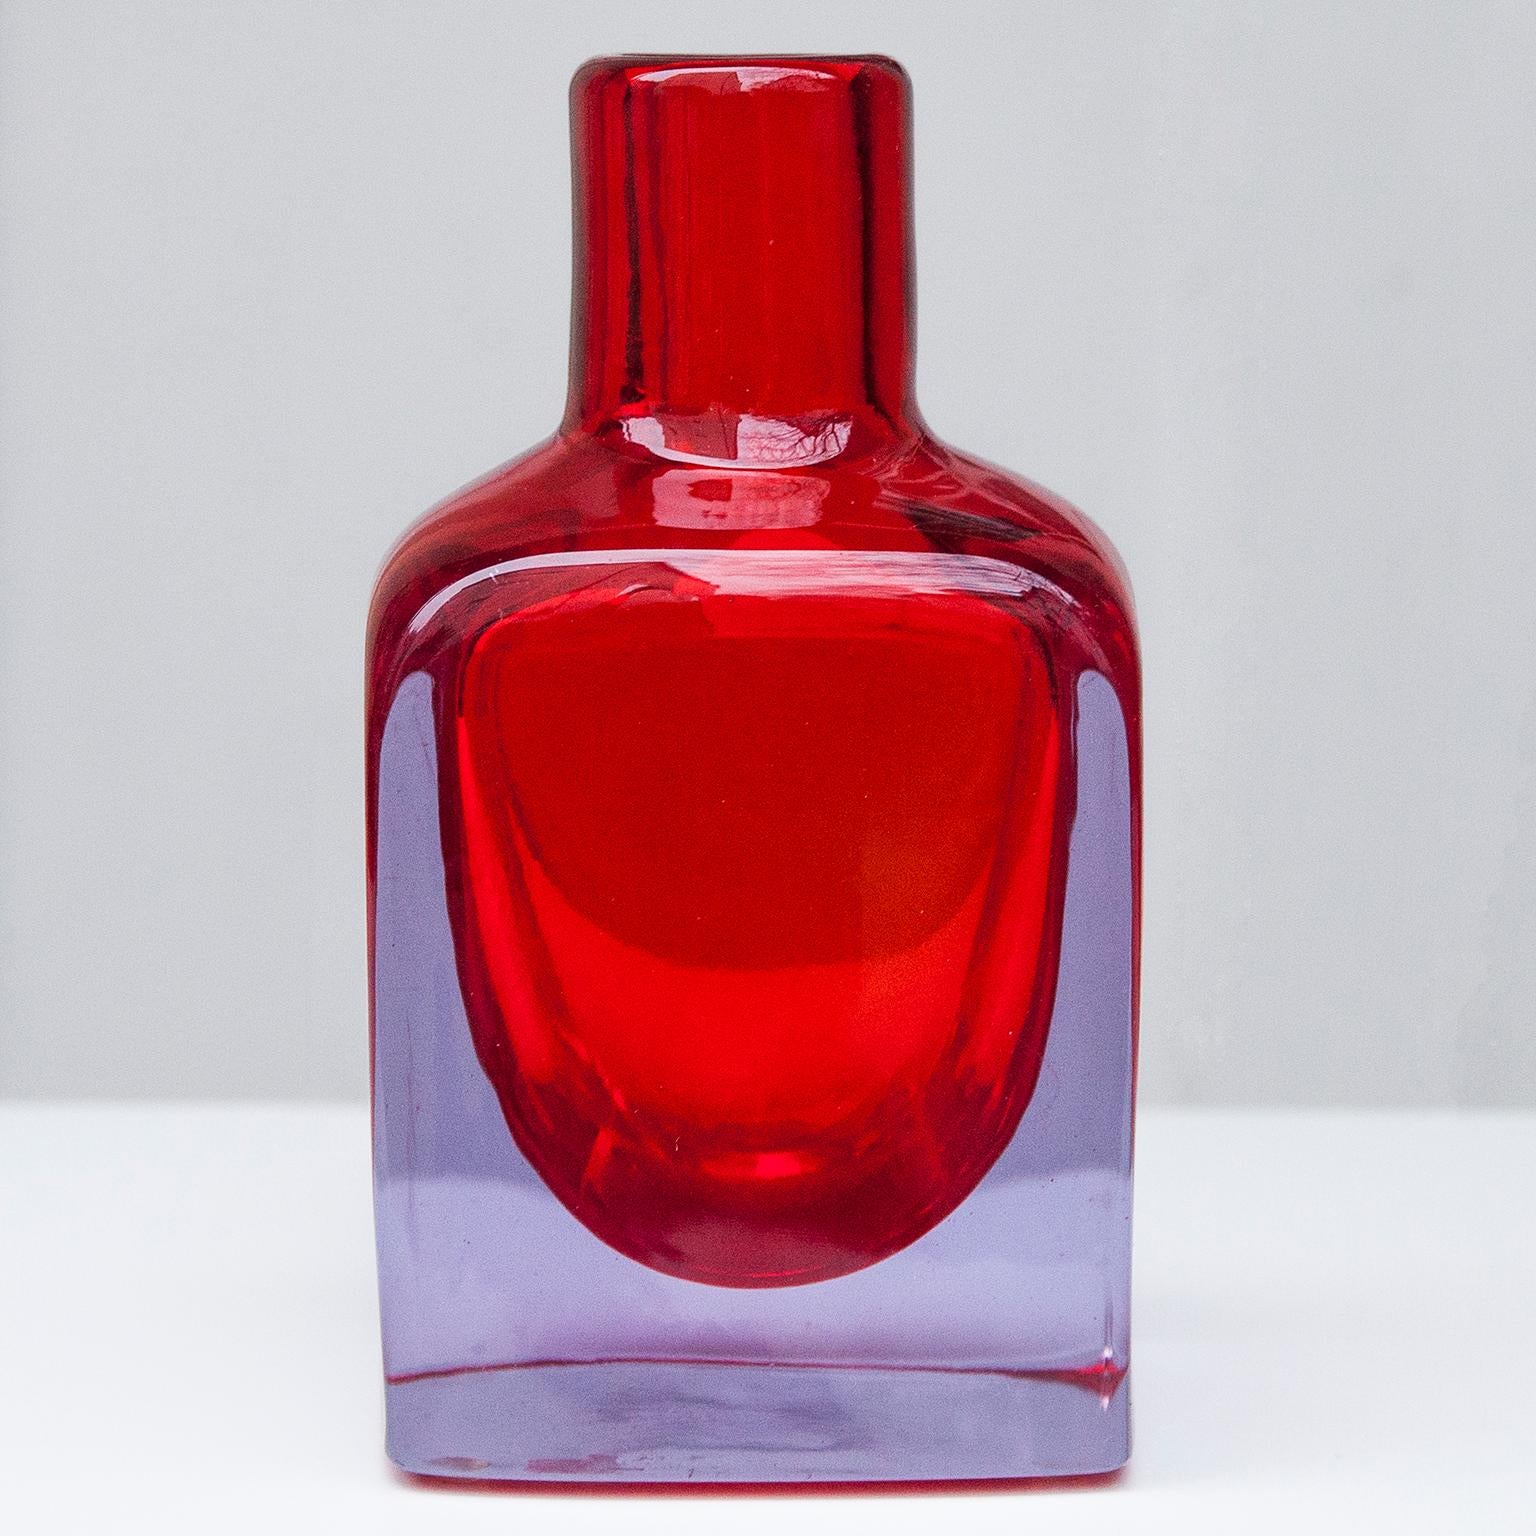 Heavy purple and red Murano glass vase by Antonio da Ros für Cenedese.

 